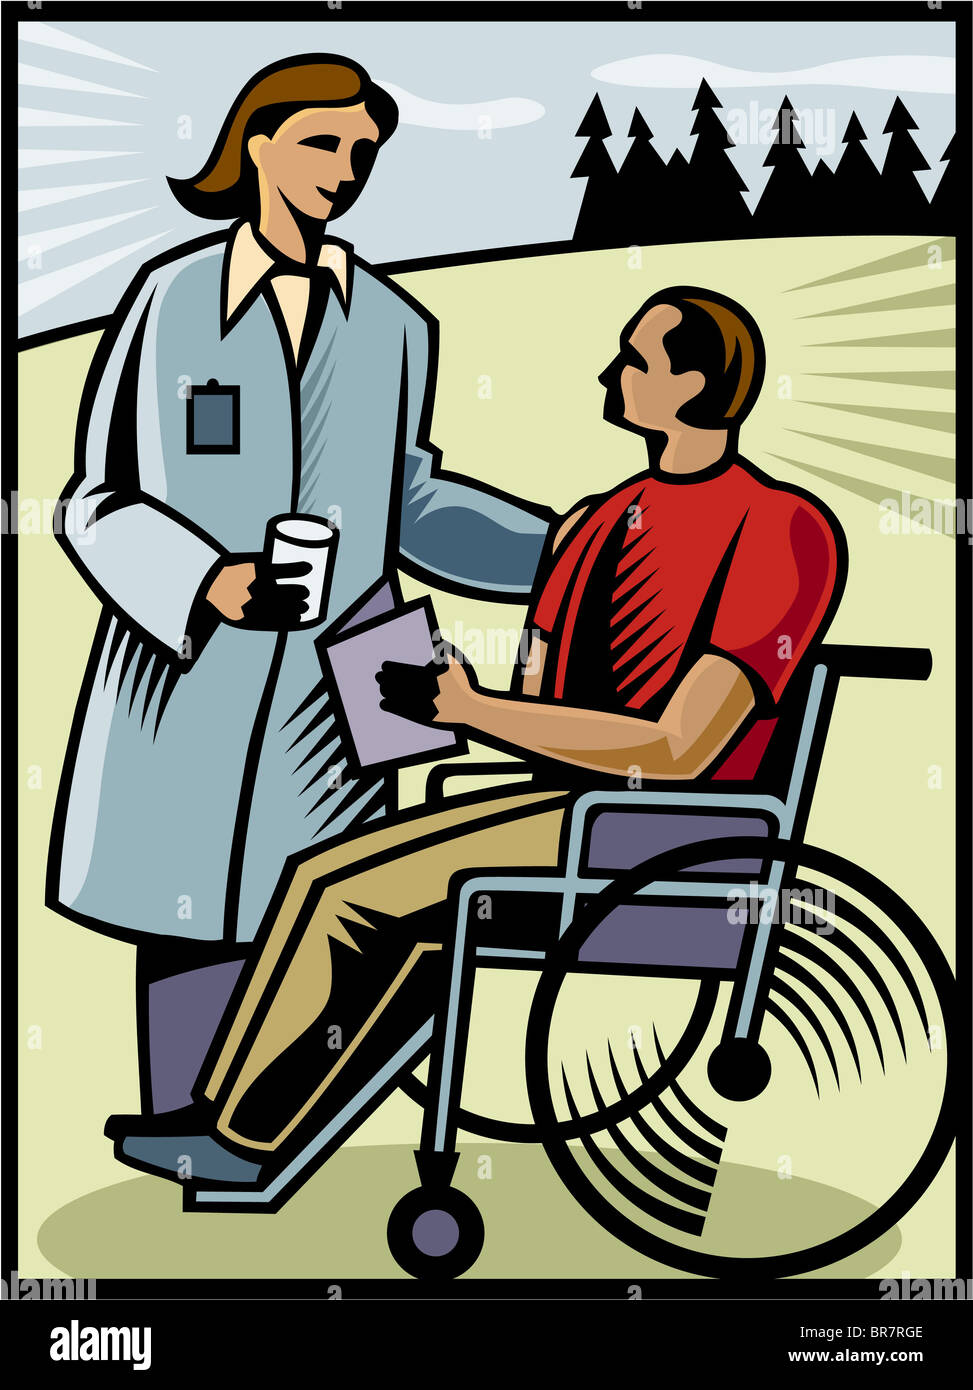 Un médecin parlant à un patient dans un fauteuil roulant Banque D'Images